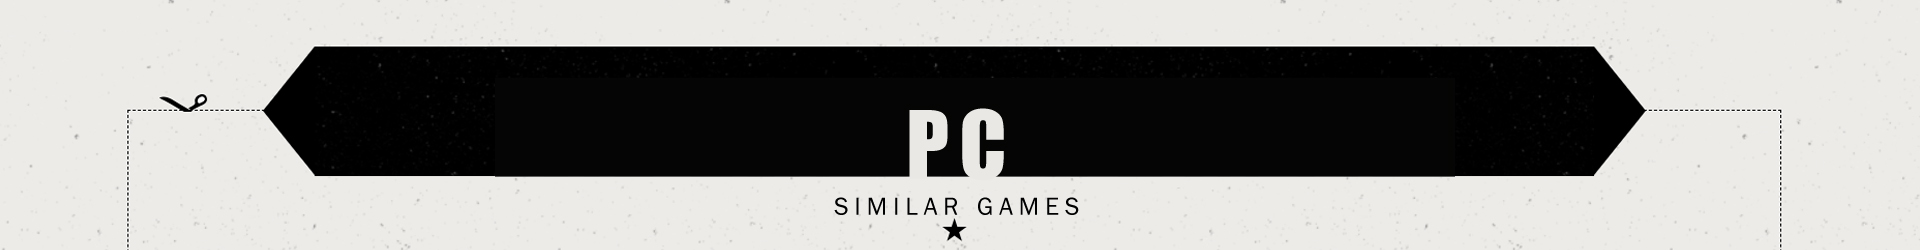 Jeux Post-Apocalyptiques Comme Fallout sur PC